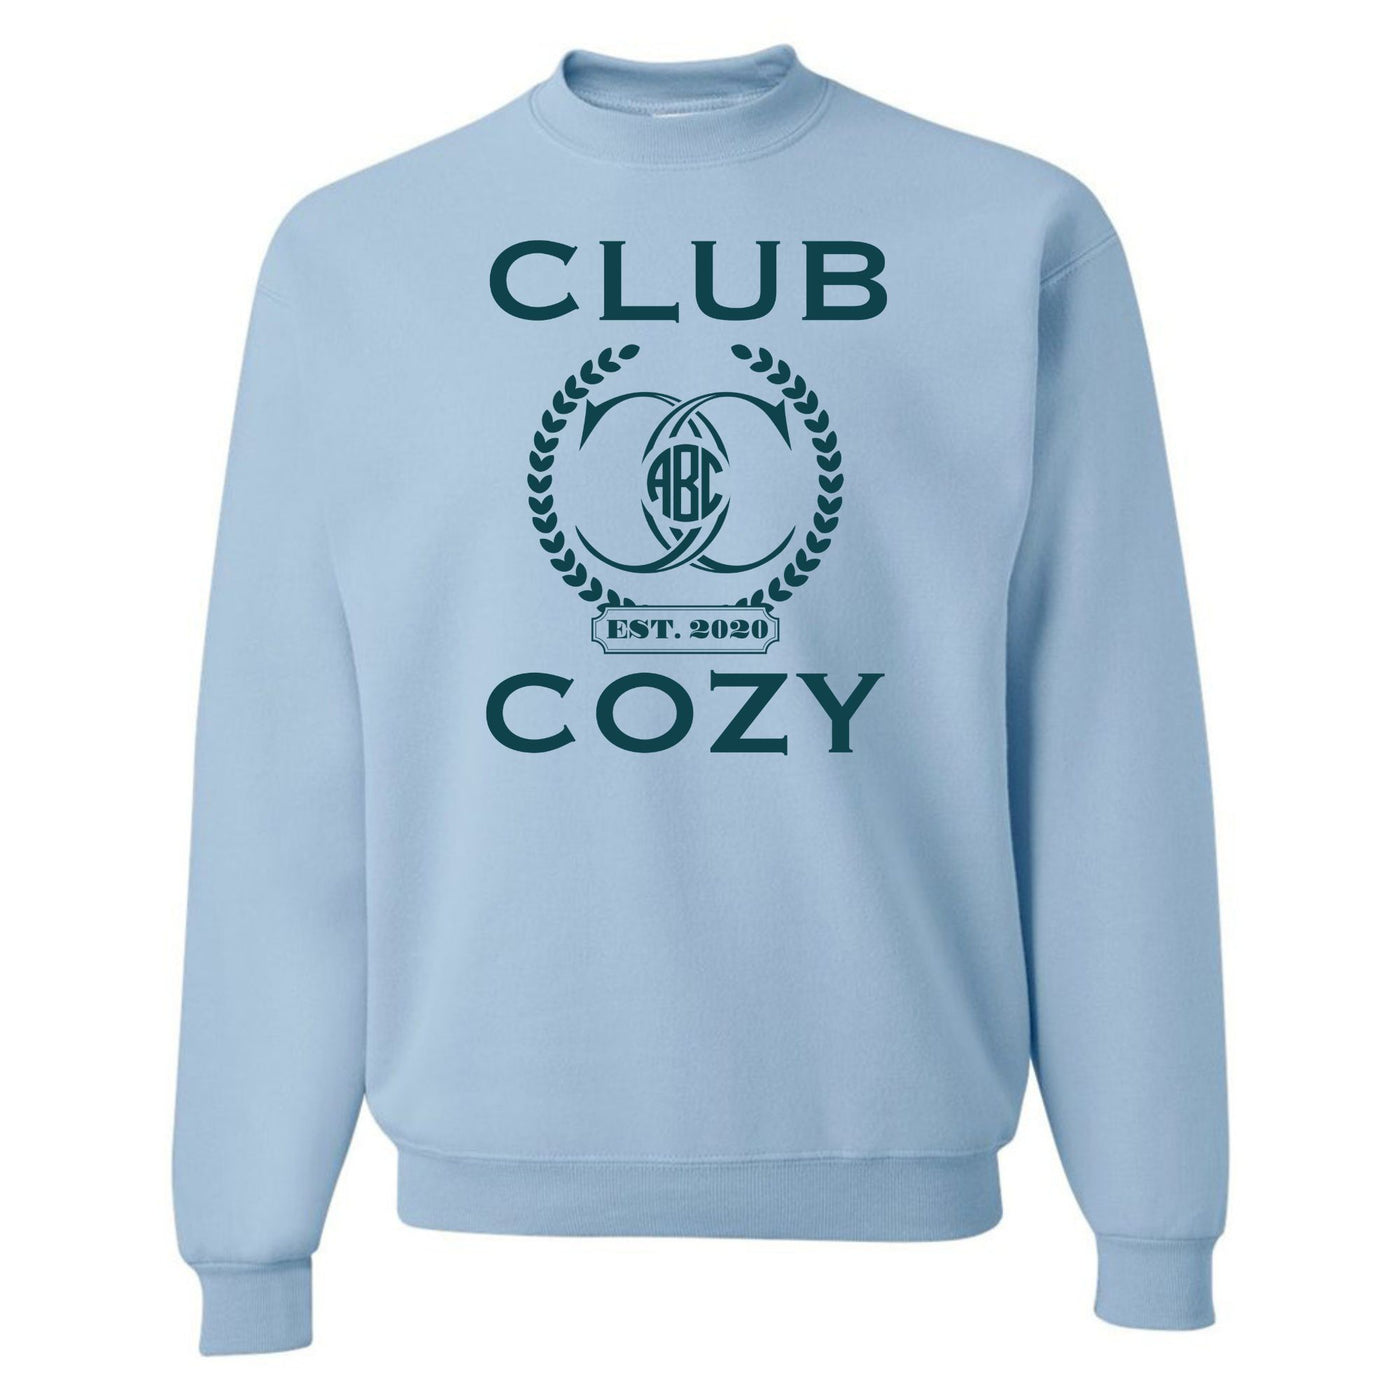 Monogrammed 'Club Cozy' Crewneck Sweatshirt